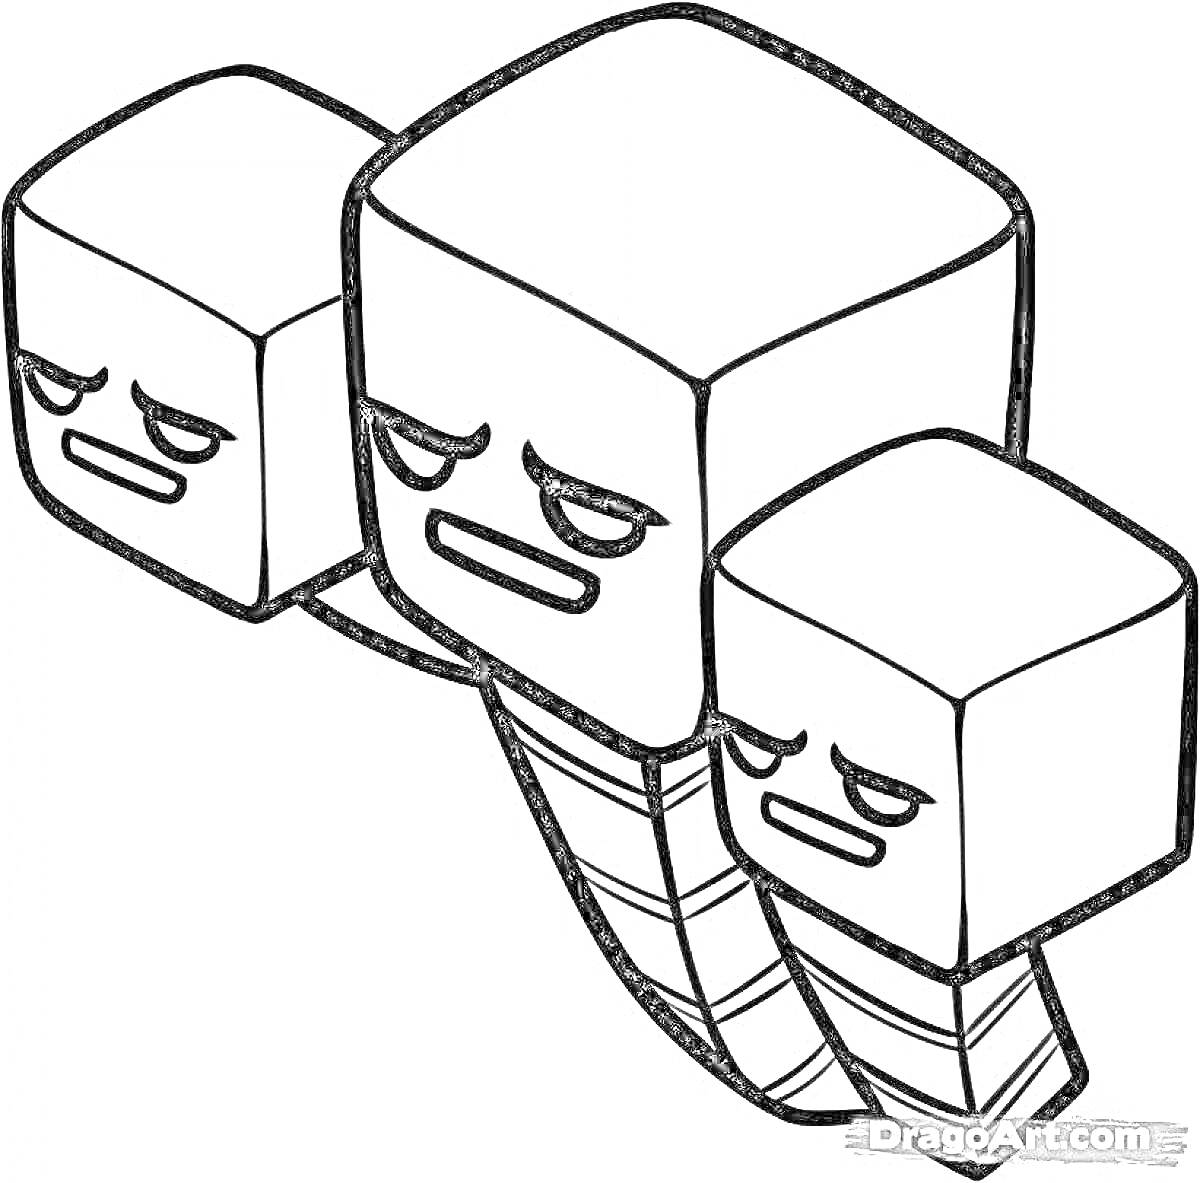 Раскраска Майнкрафт три головы создания с злыми выражениями лиц